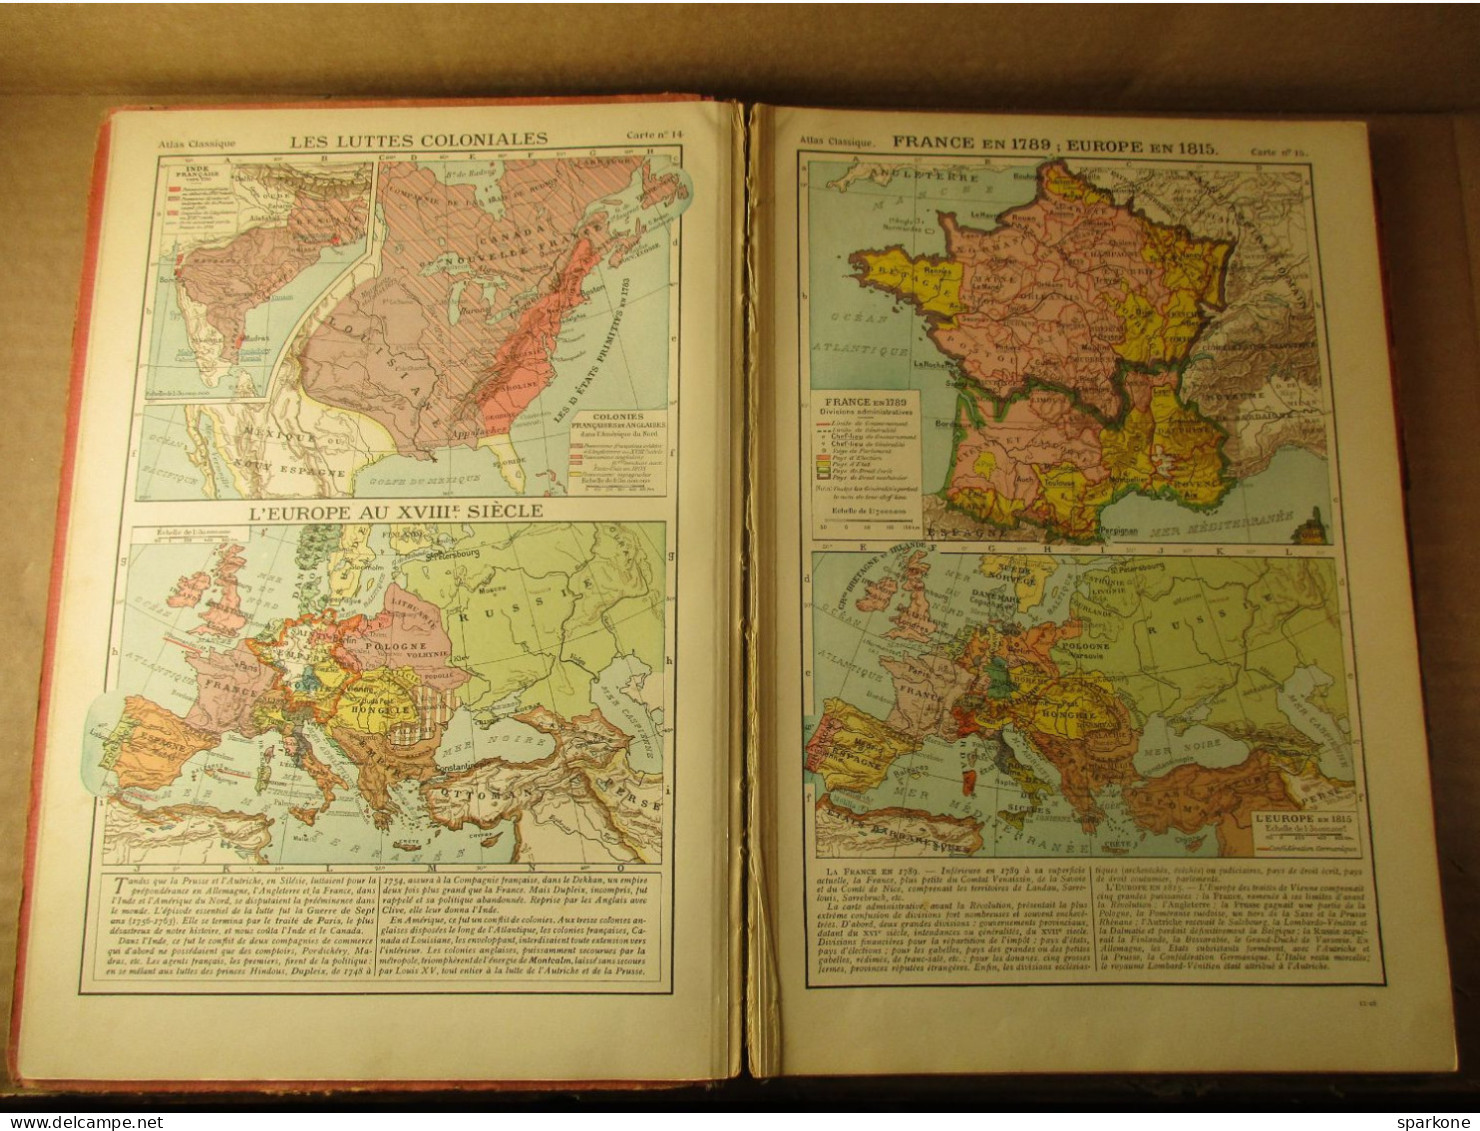 Atlas Classique De Géographie Ancienne Et Moderne (F. Schrader Et L. Gallouédec) éditions Hachette De 1928 - Karten/Atlanten